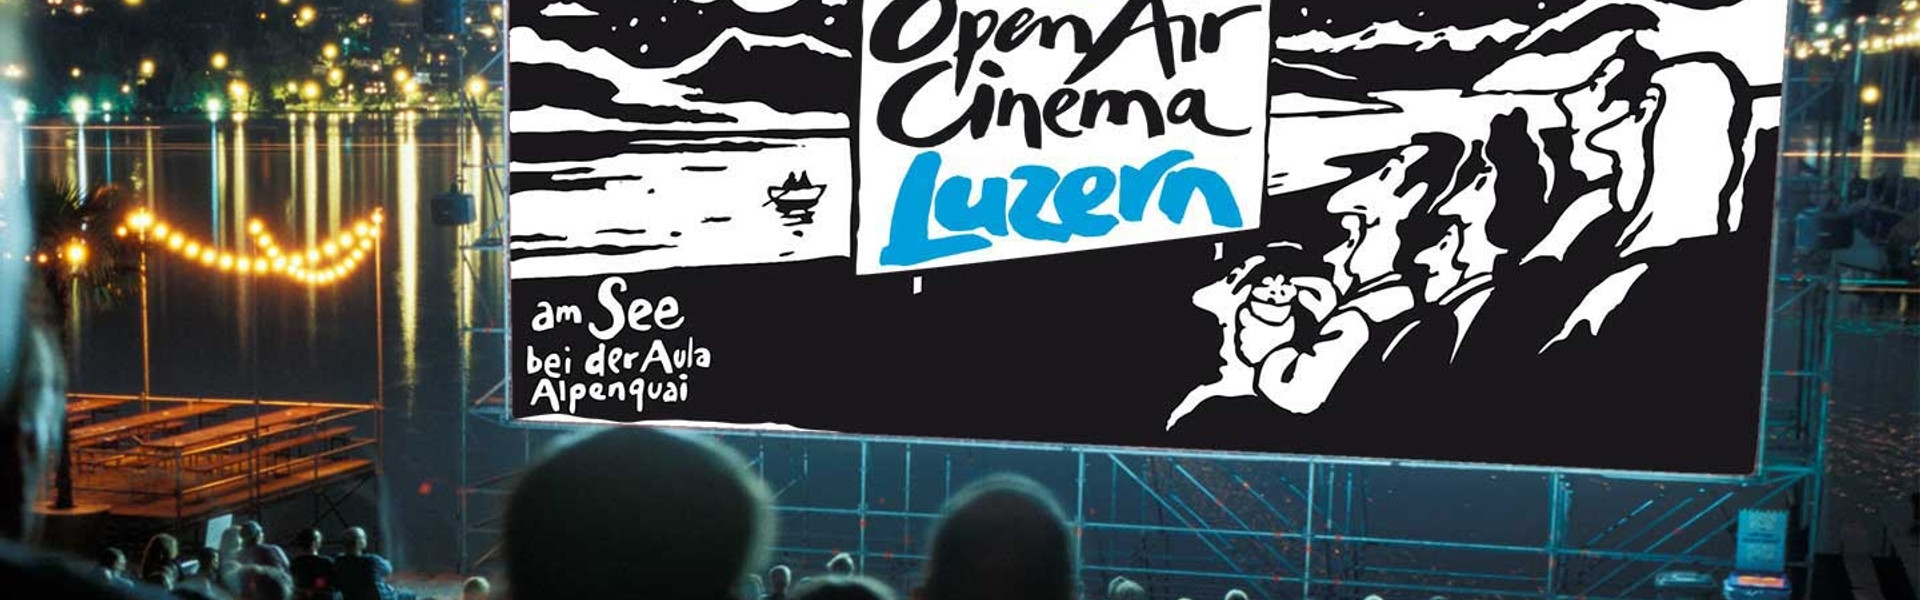  Coop Open Air Cinema